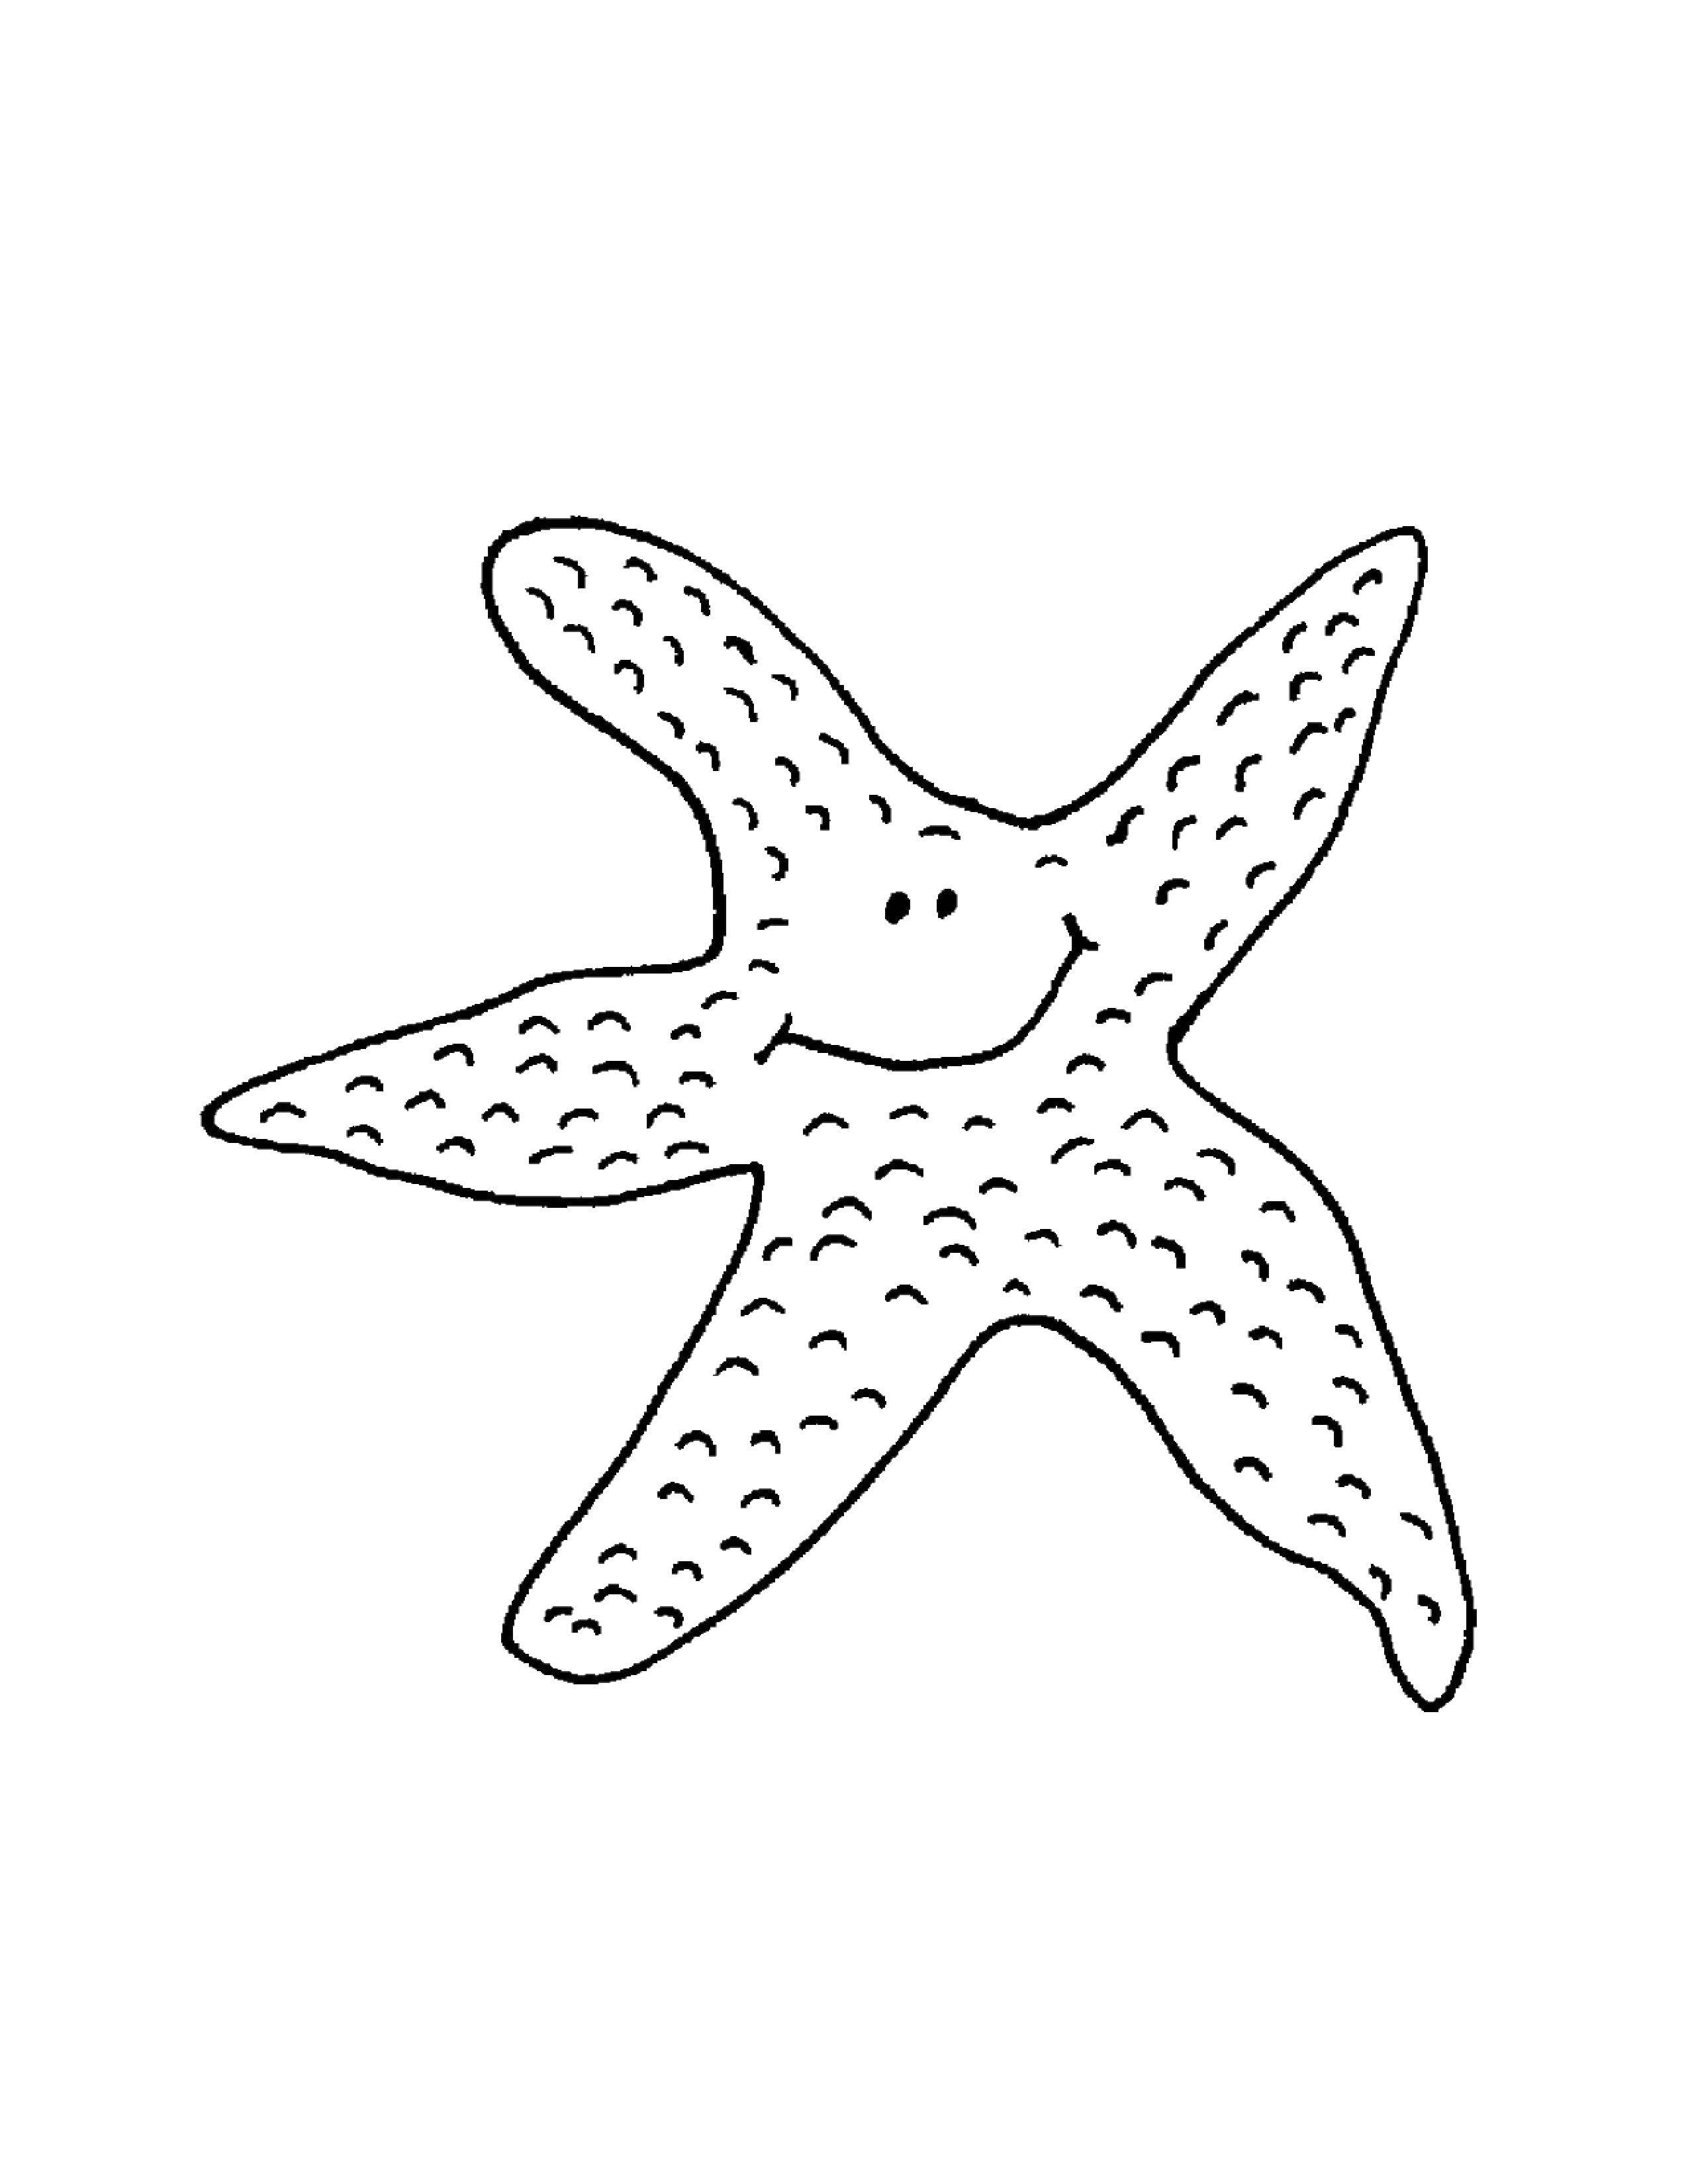 Название: Раскраска Морская звезда. Категория: Морские животные. Теги: Подводный мир, морская звезда.